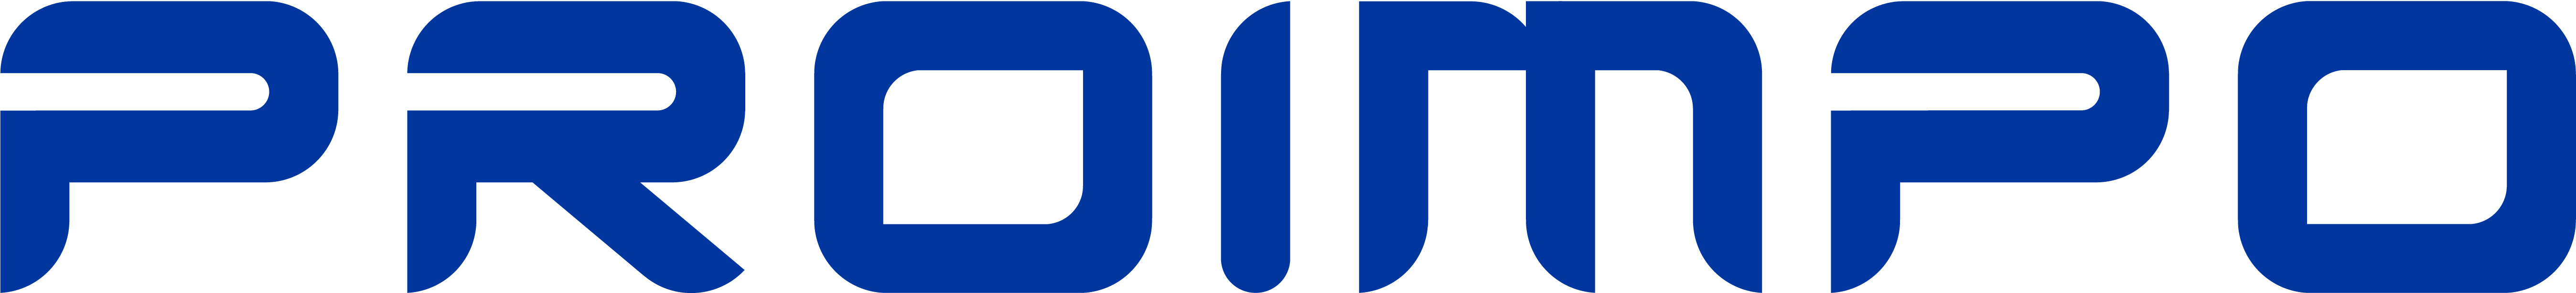 logo_proimpo_2020.png